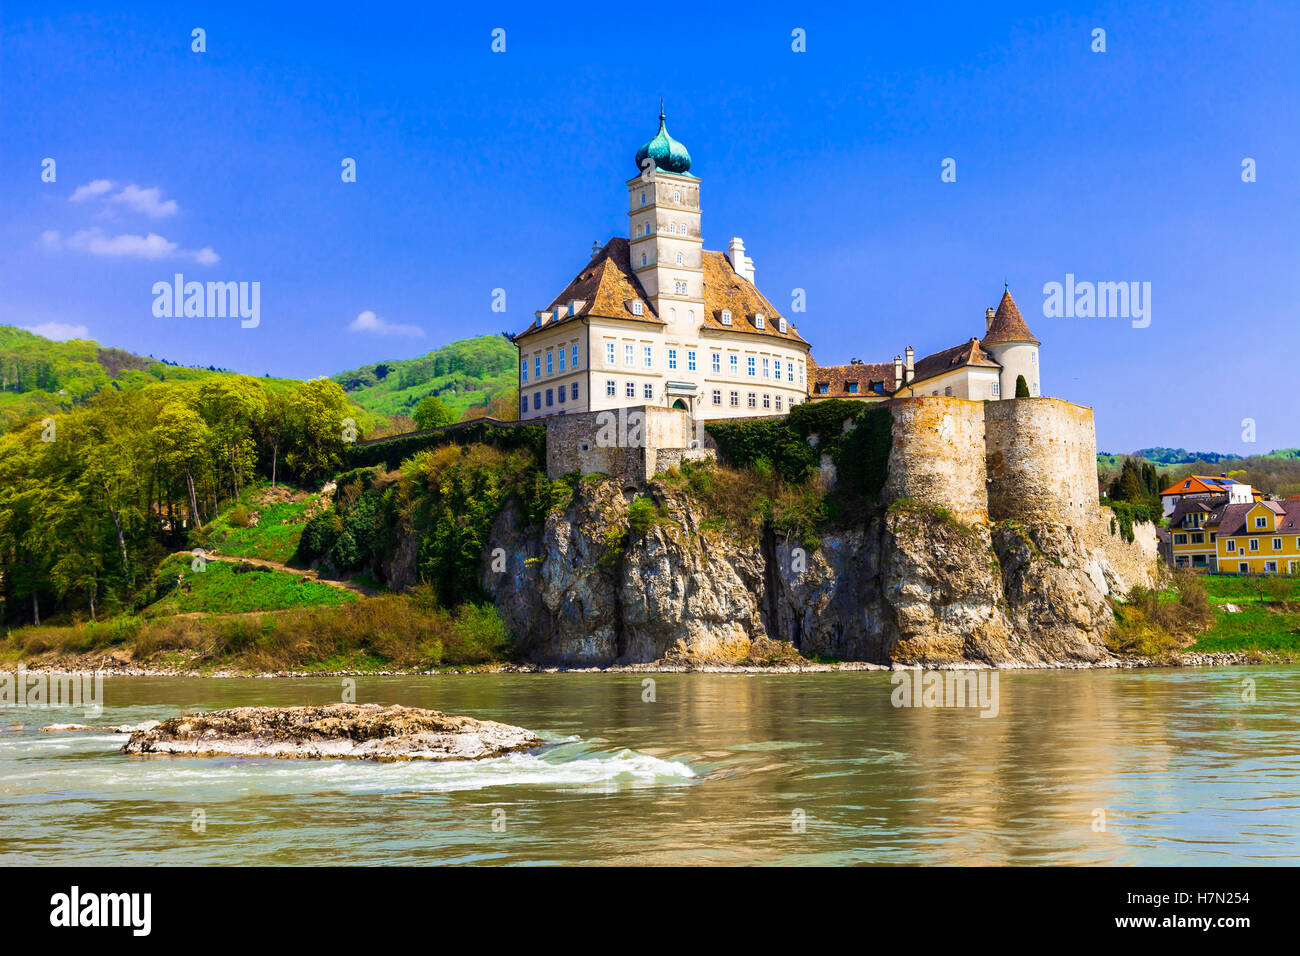 Schonbuhel château, Danube, Autriche Banque D'Images